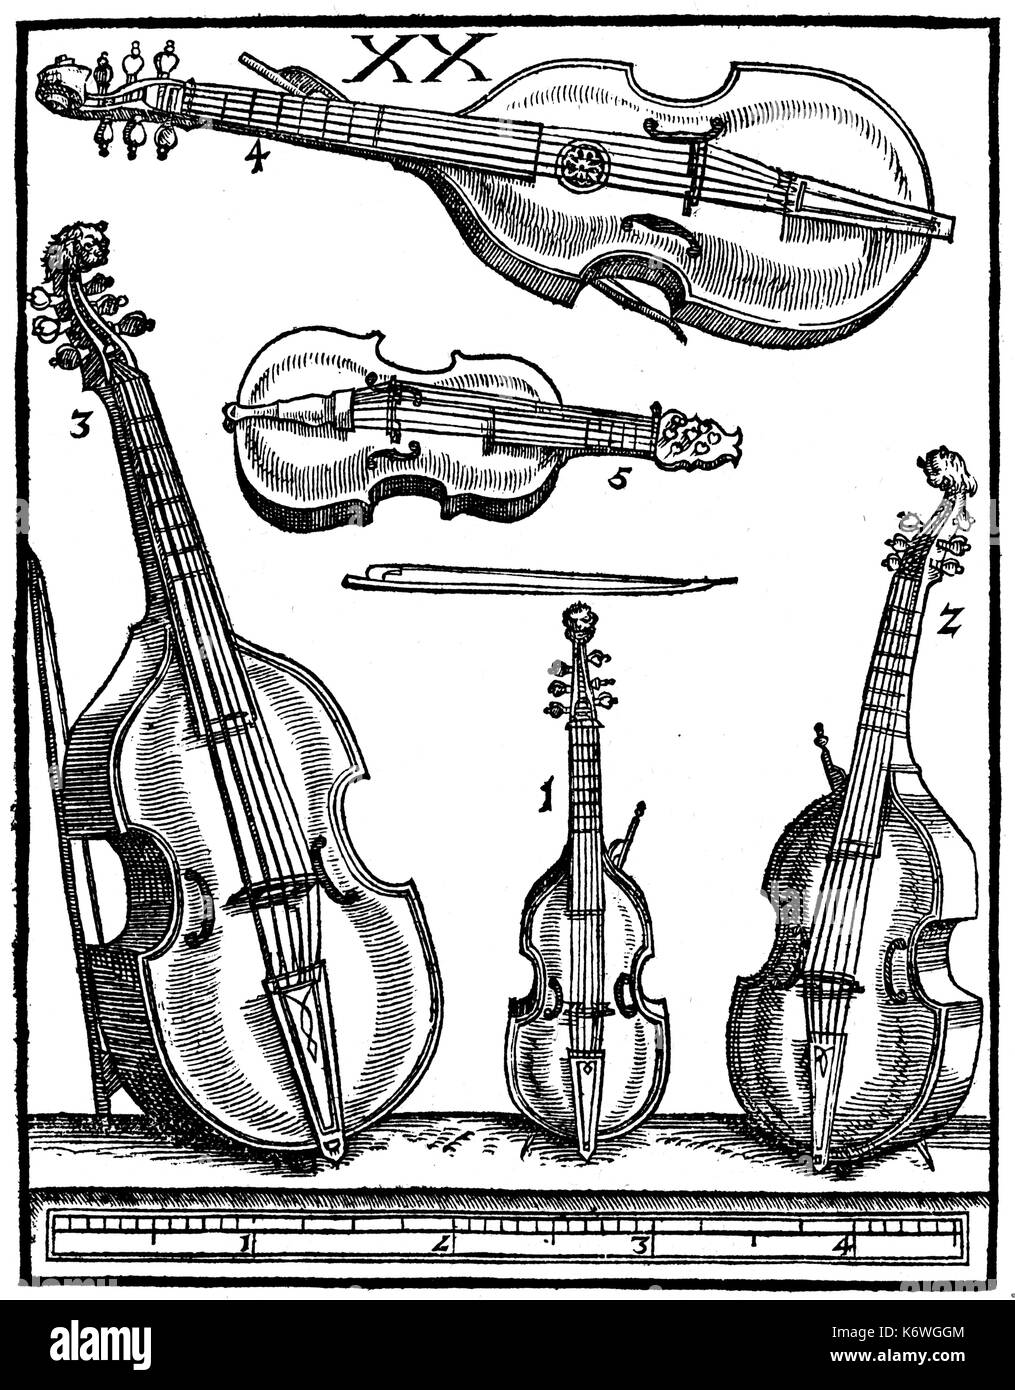 Viols coi fiocchi : 1-3 alti, Tenor & Bass Viols (da Gamba) 4.Viola Bastarda (Lyra VIOI); 5. Lyra da braccio v141. Piastra da XX PRAETORIUS "yntagma Musicum" (1619): TEDESCO musicista, compositore e teorico, 15 Febbraio 1571 - 15 febbraio 1621. Foto Stock